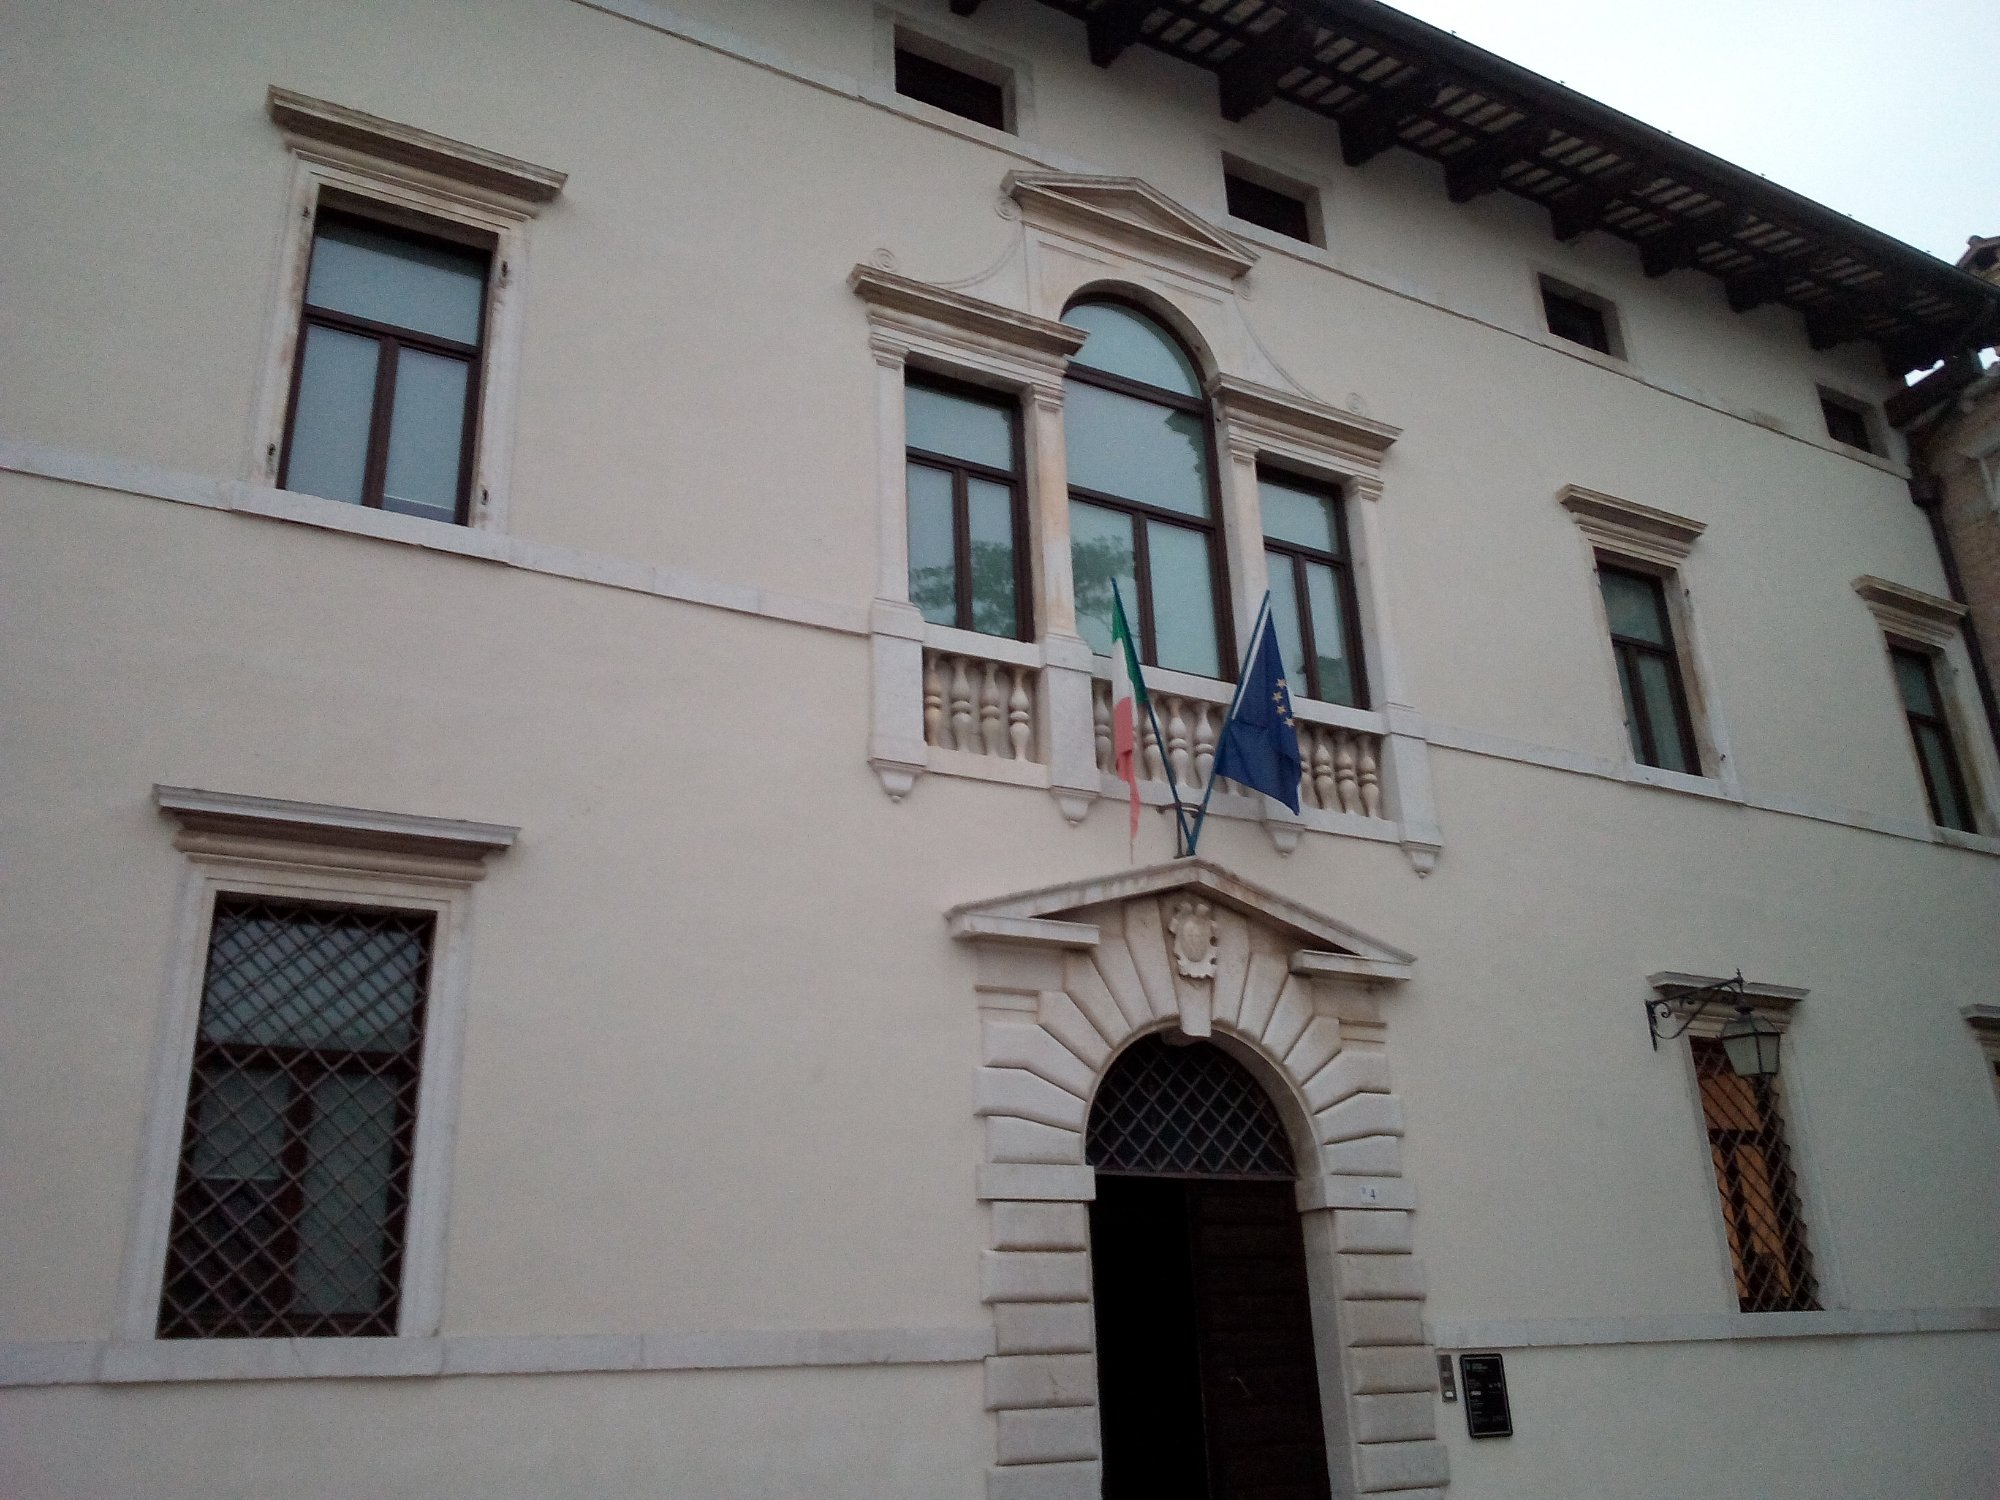 Palazzo Tadea